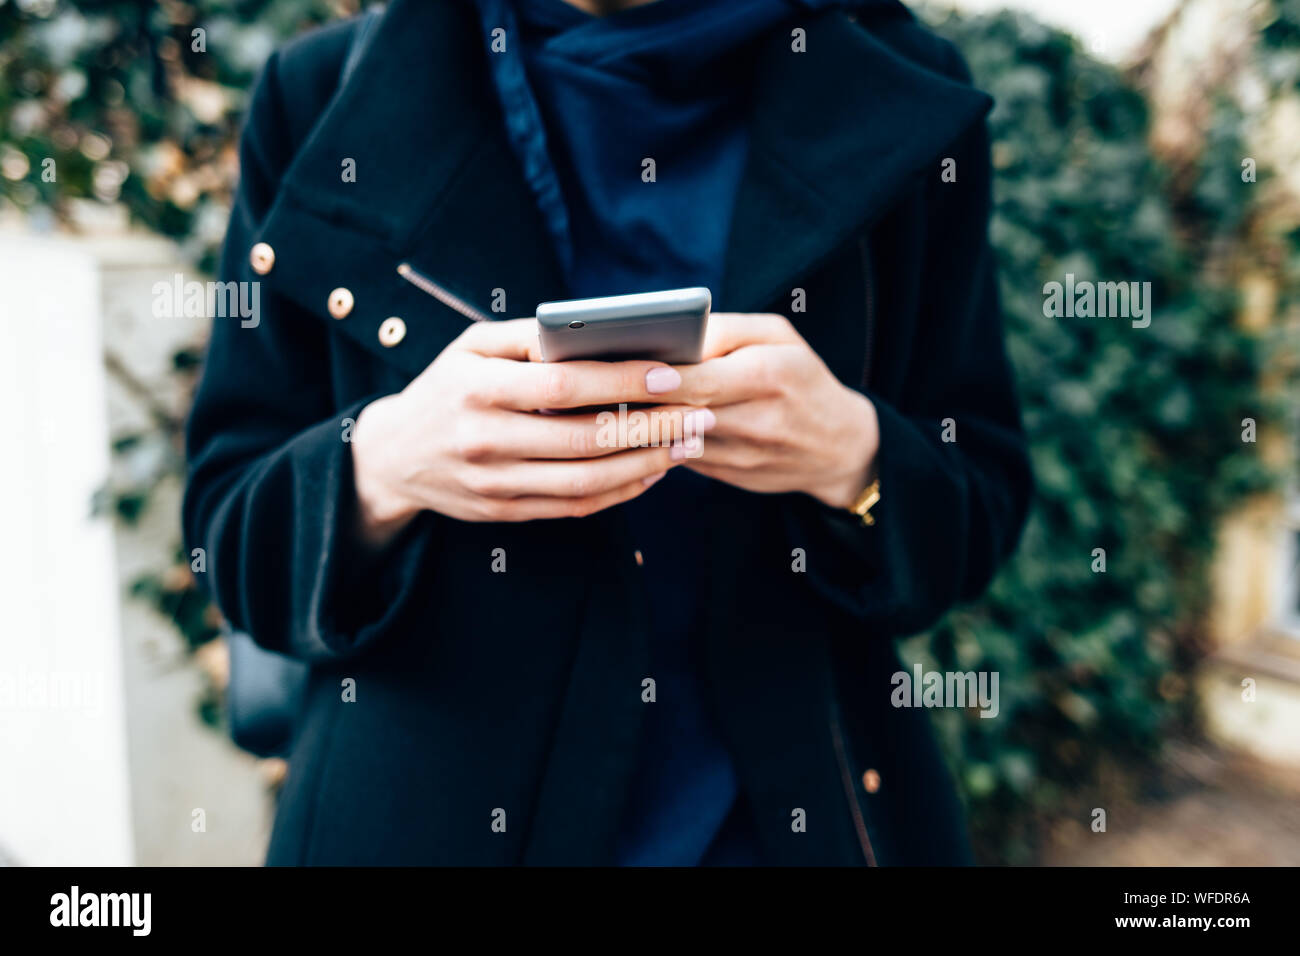 Jeune femme portant un élégant manteau noir holding mobile phone standing outdoors dans journée, close-up. Banque D'Images